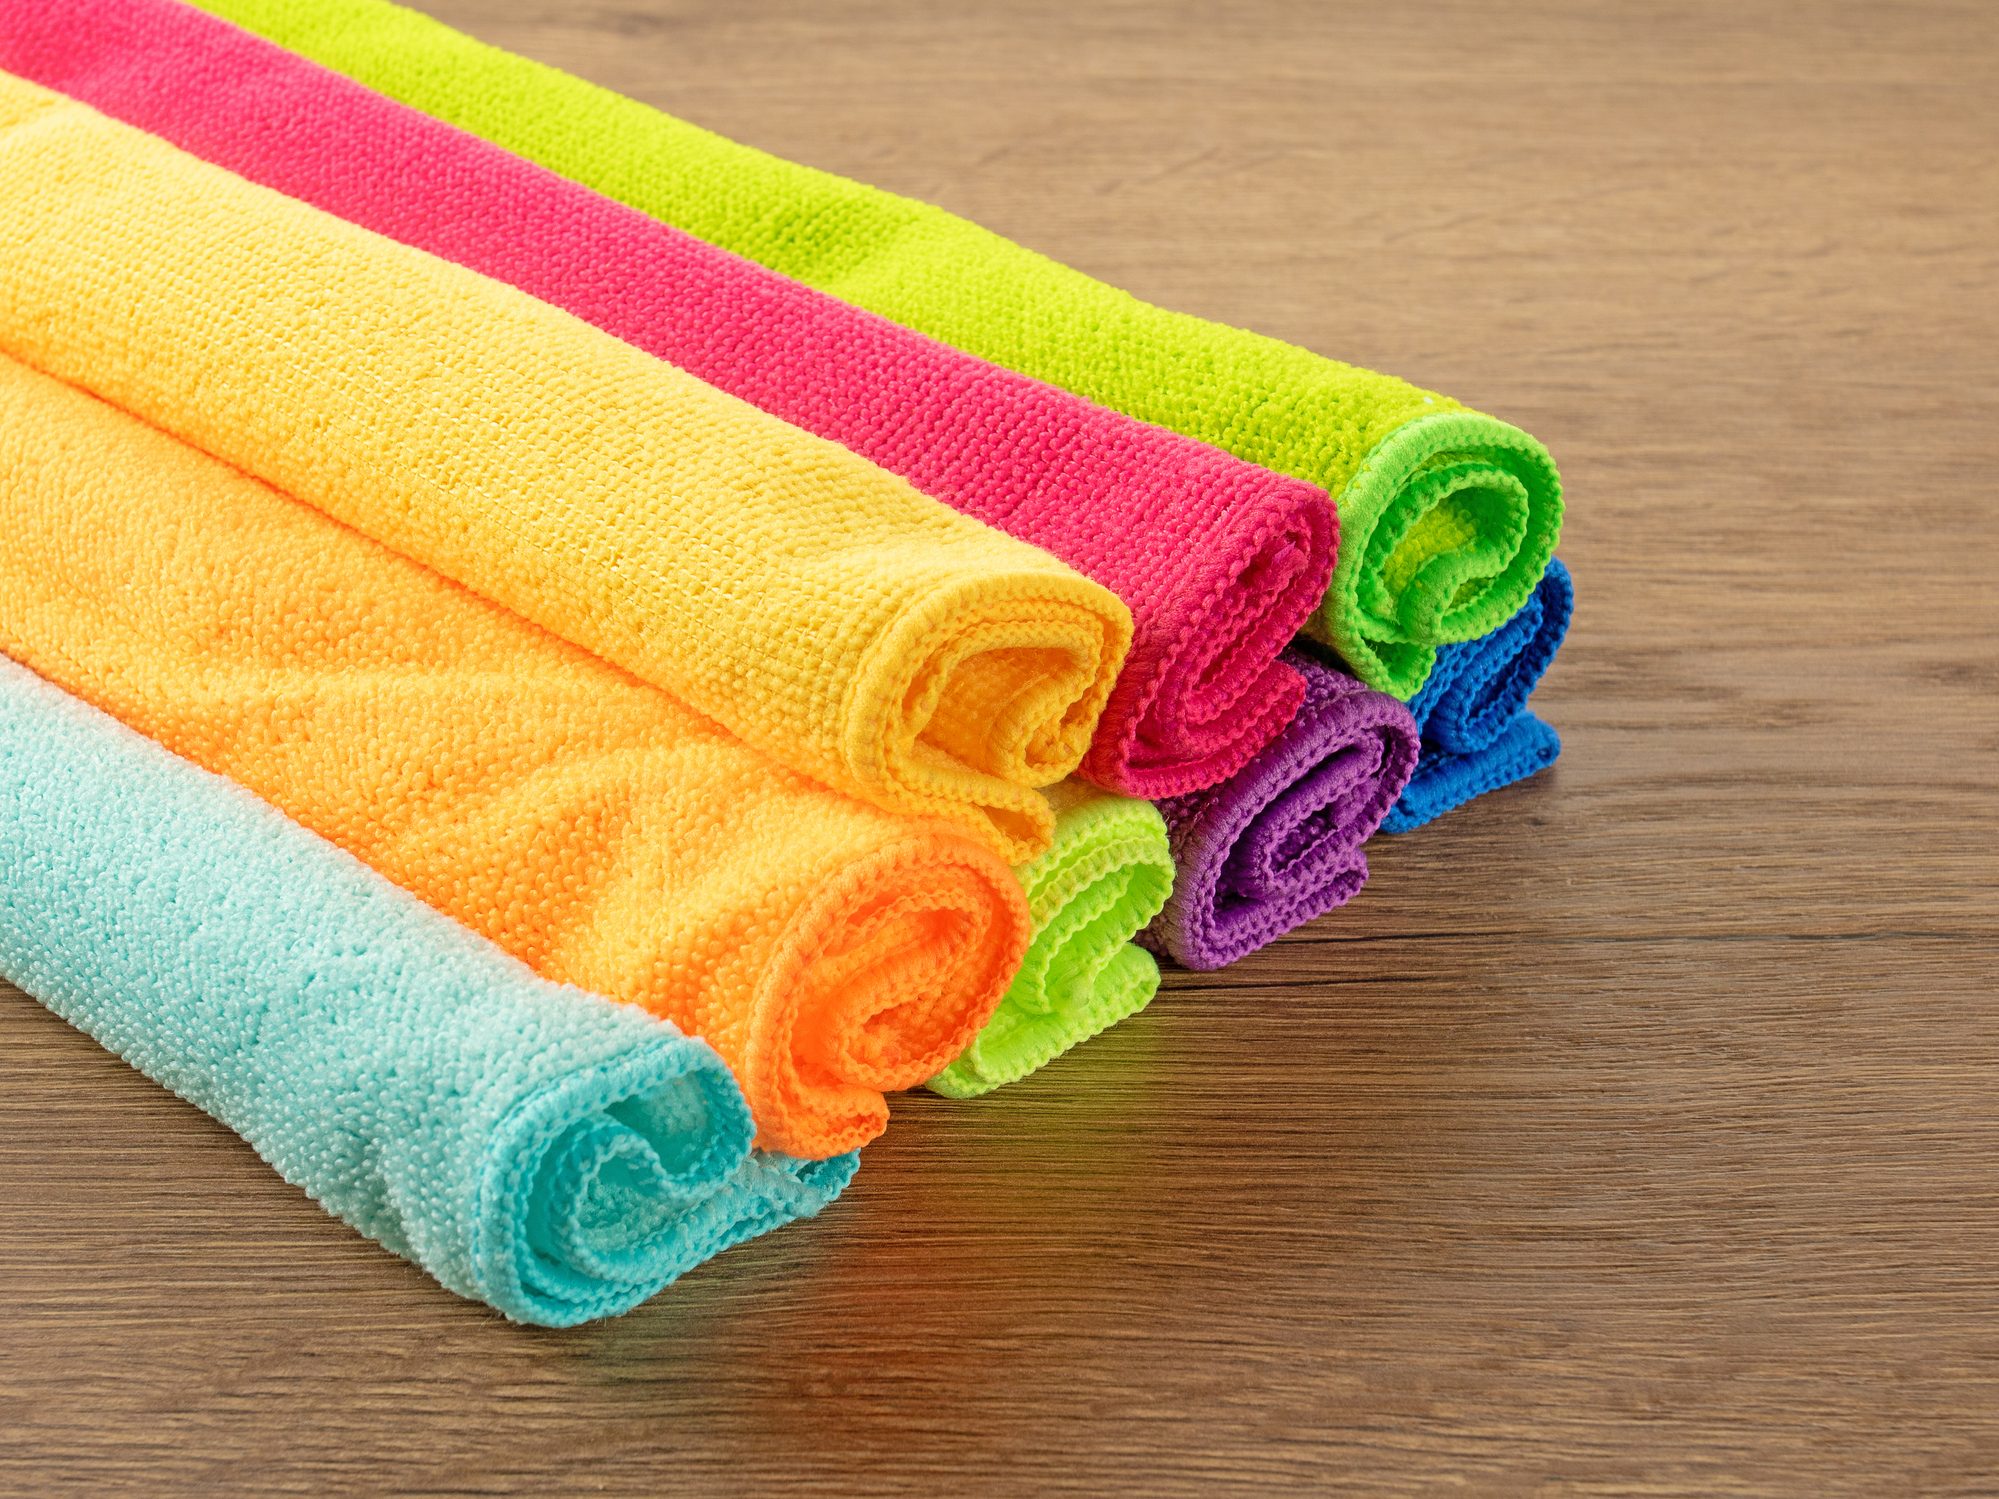 Towels Microfiber Towels Solid-color Dish Towels Towels Non